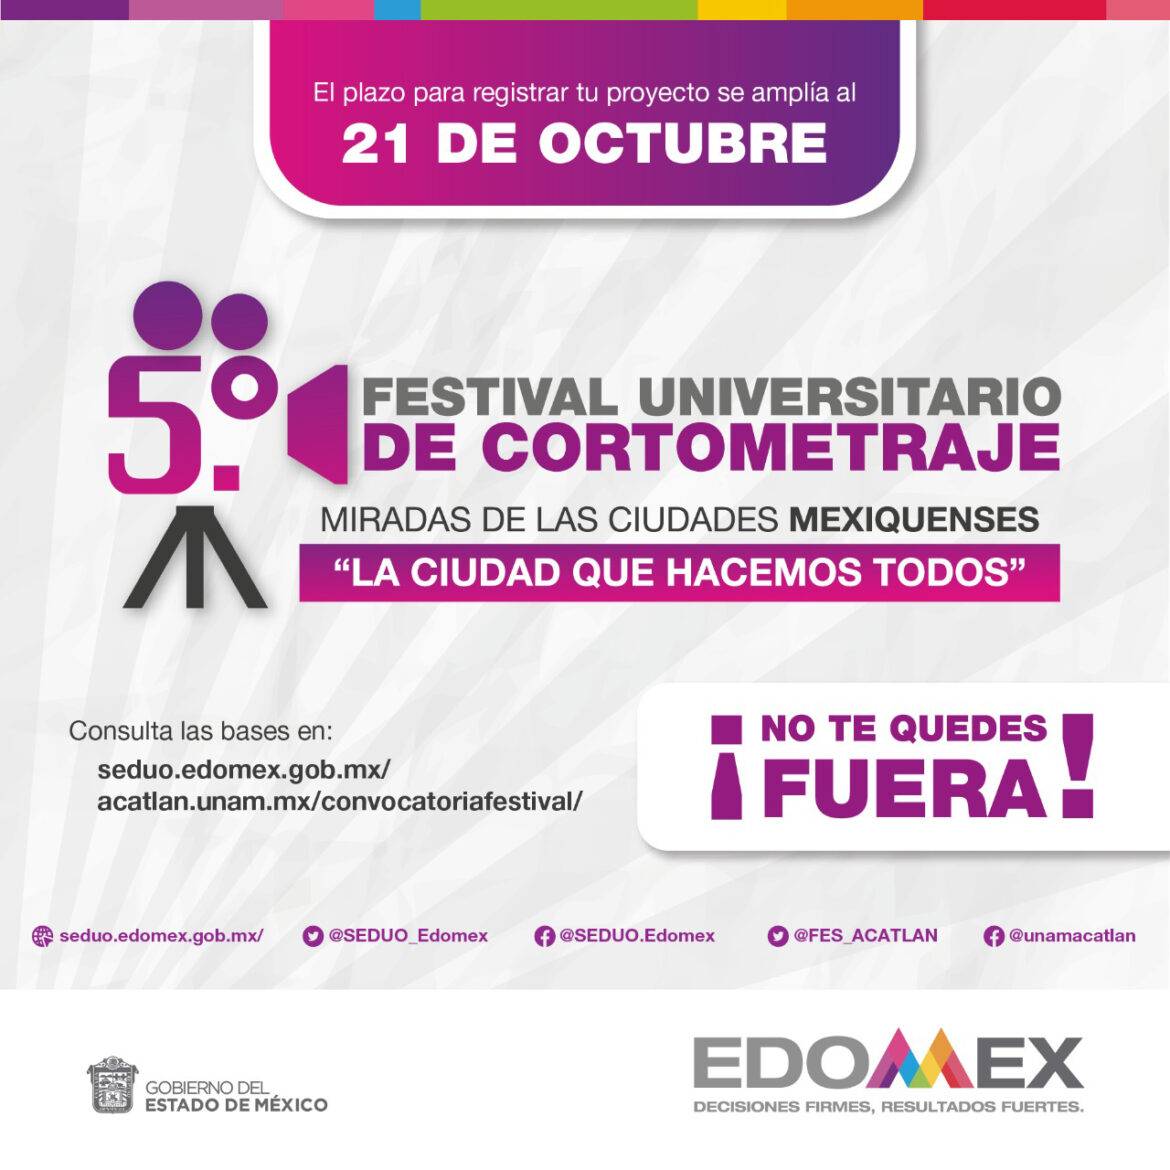 Informan que queda una semana para participar en el 5° Festival Universitario de Cortometraje “Miradas de las Ciudades Mexiquenses”